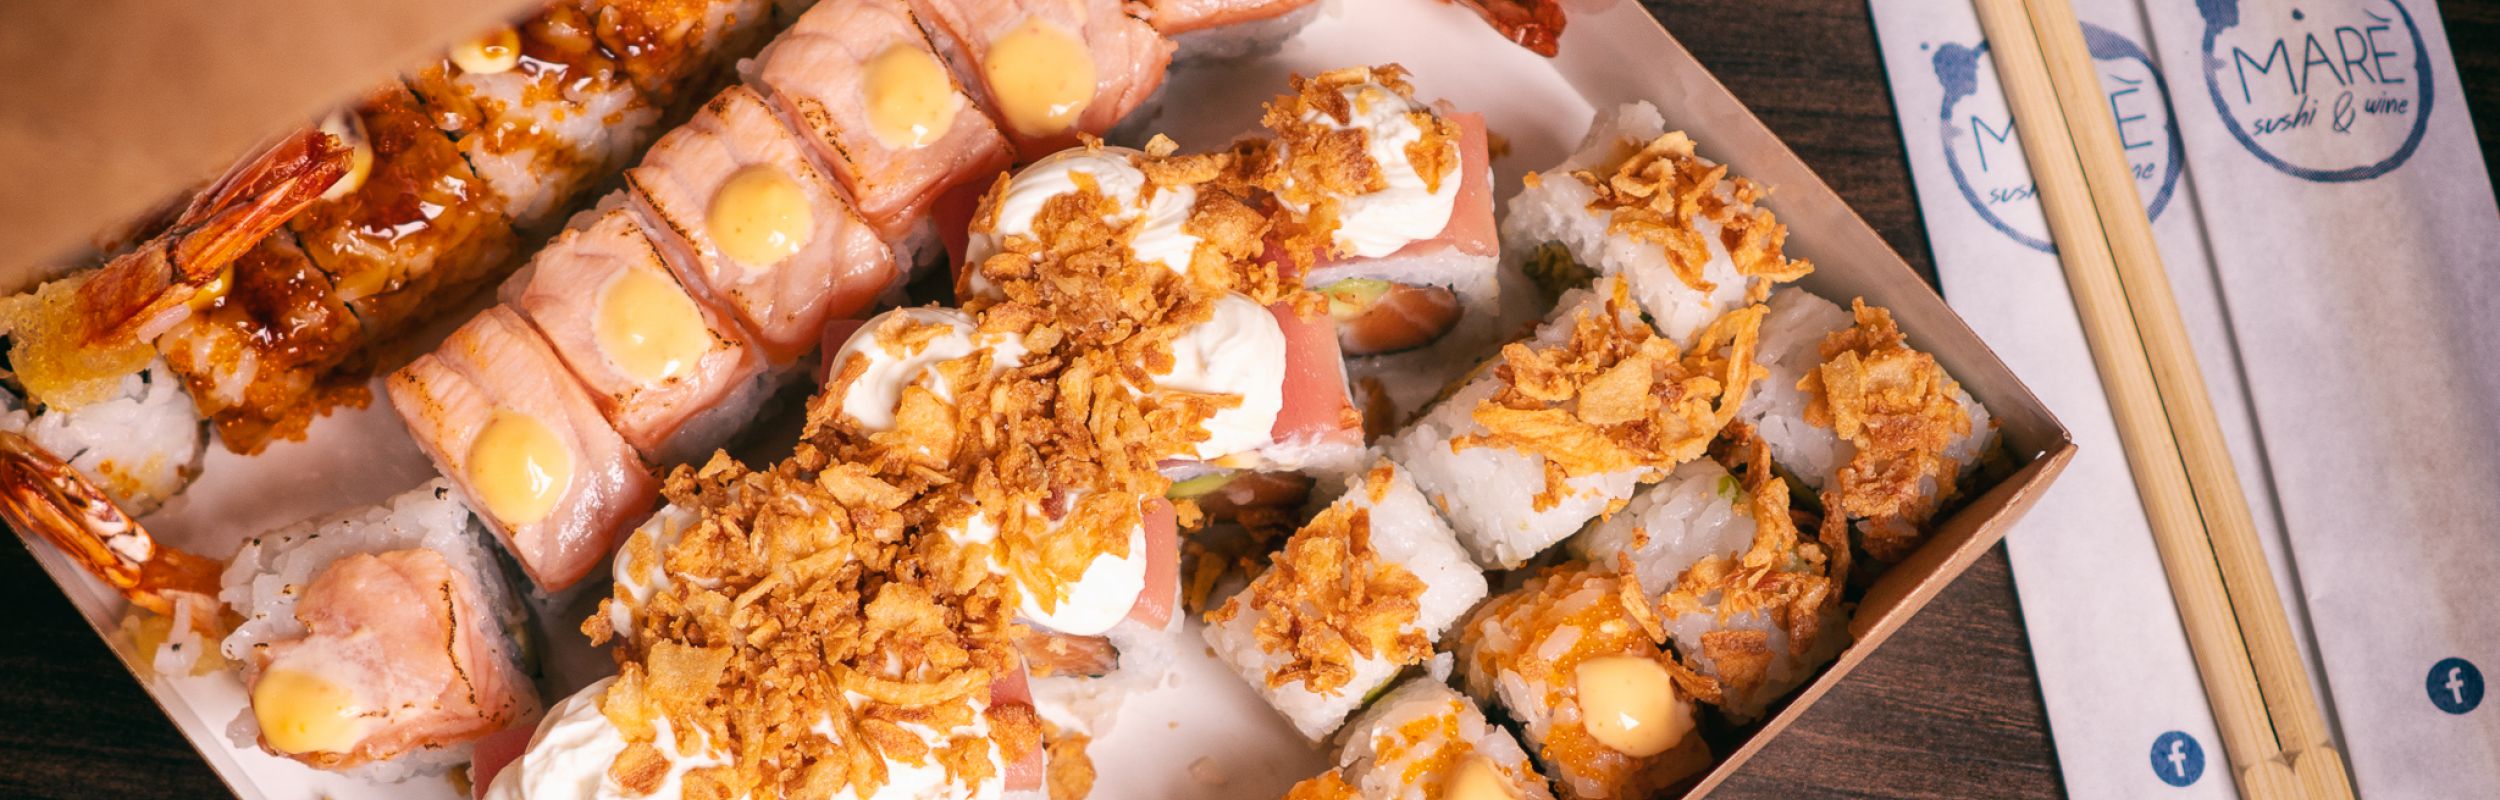 Non sai cosa scegliere?!?! Ordina i nostri sushi box al resto ci pensiamo noi!!! 